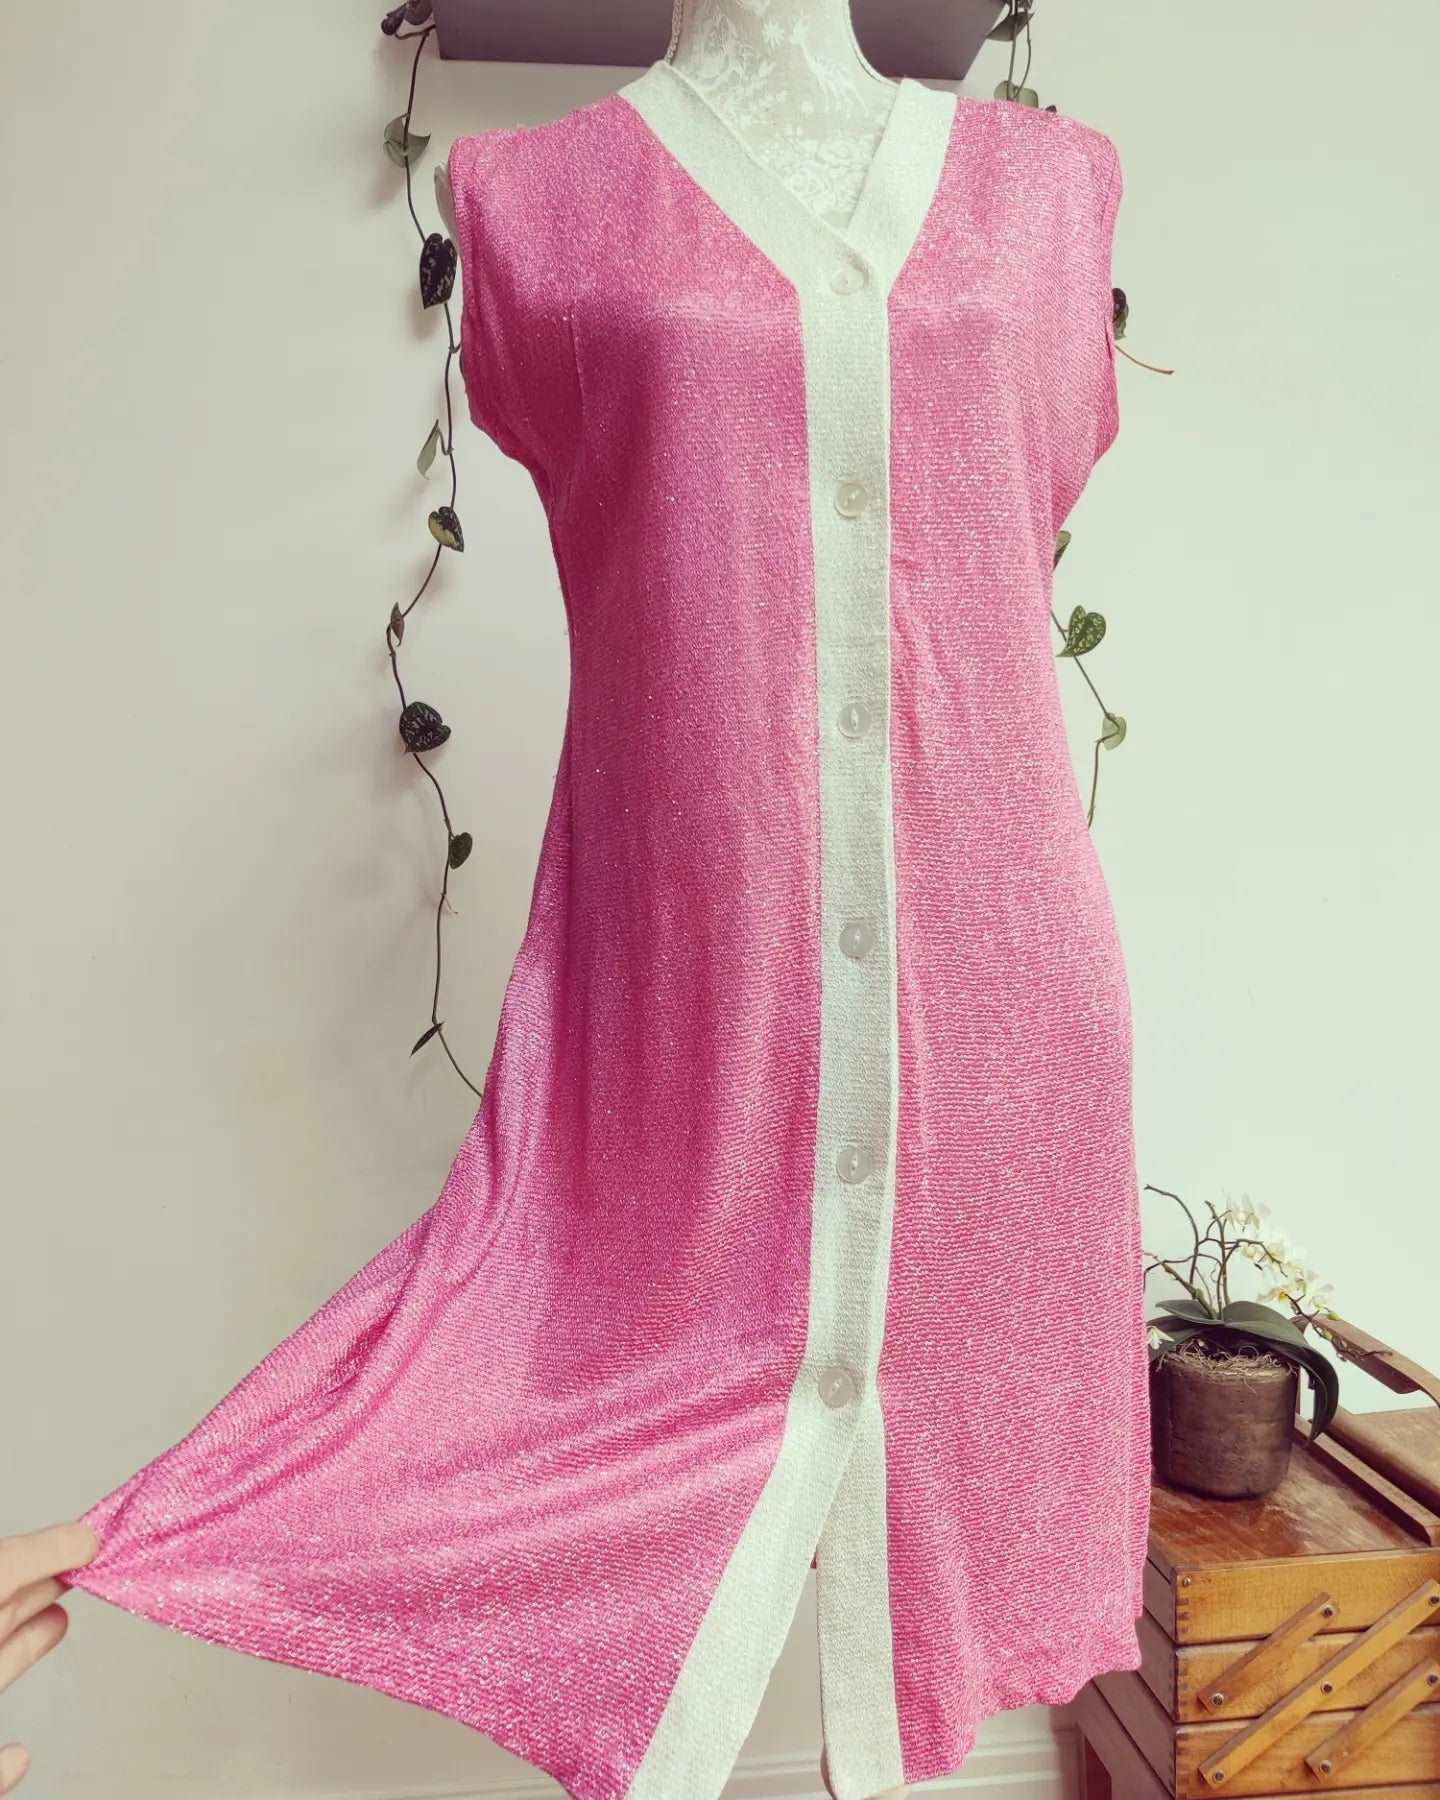 vintage pink dress for sale, size 12.